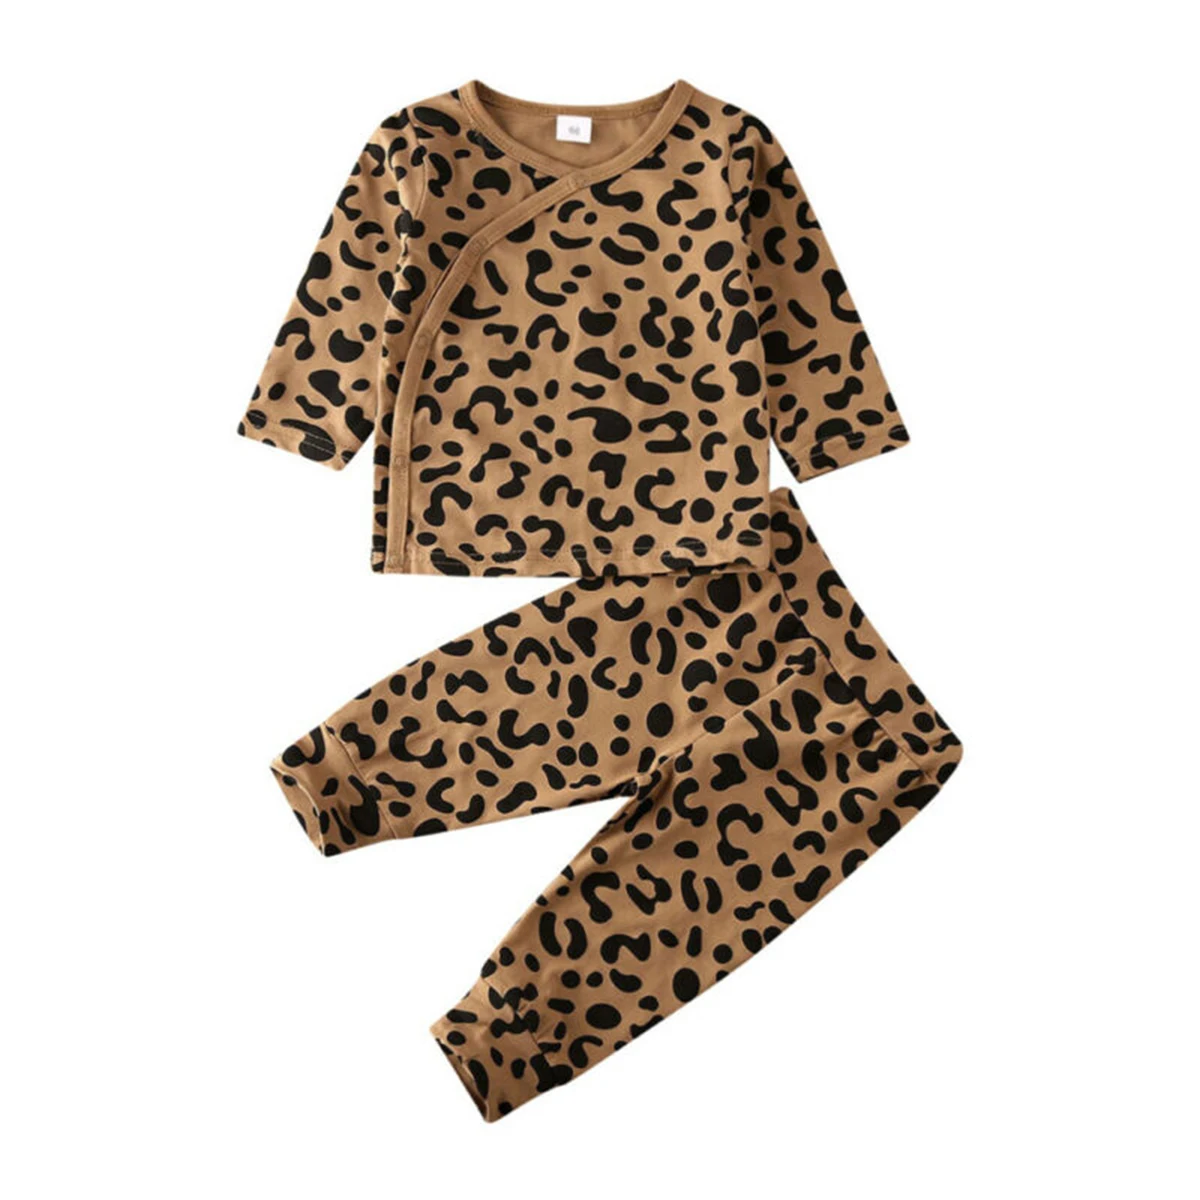 2 шт./компл. модная одежда для малышей леопардовой расцветки с длинными рукавами